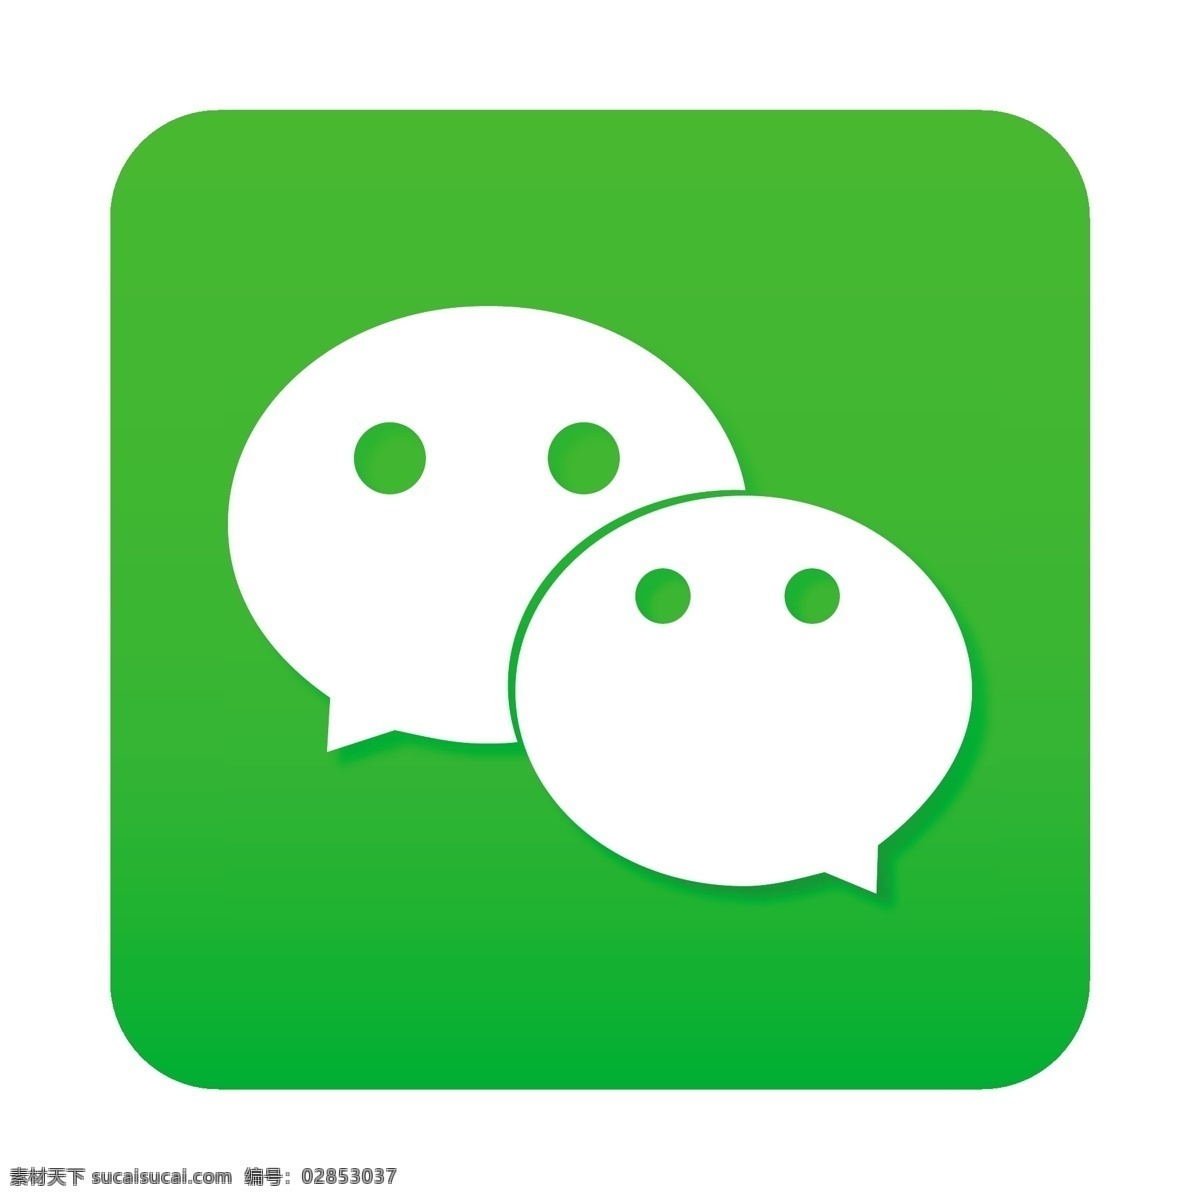 绿色 微 信 聊天 软件 logo 图标 微信 聊天软件 创意 2.5d 扁平 手机app logo图标 免抠图png 千库原创